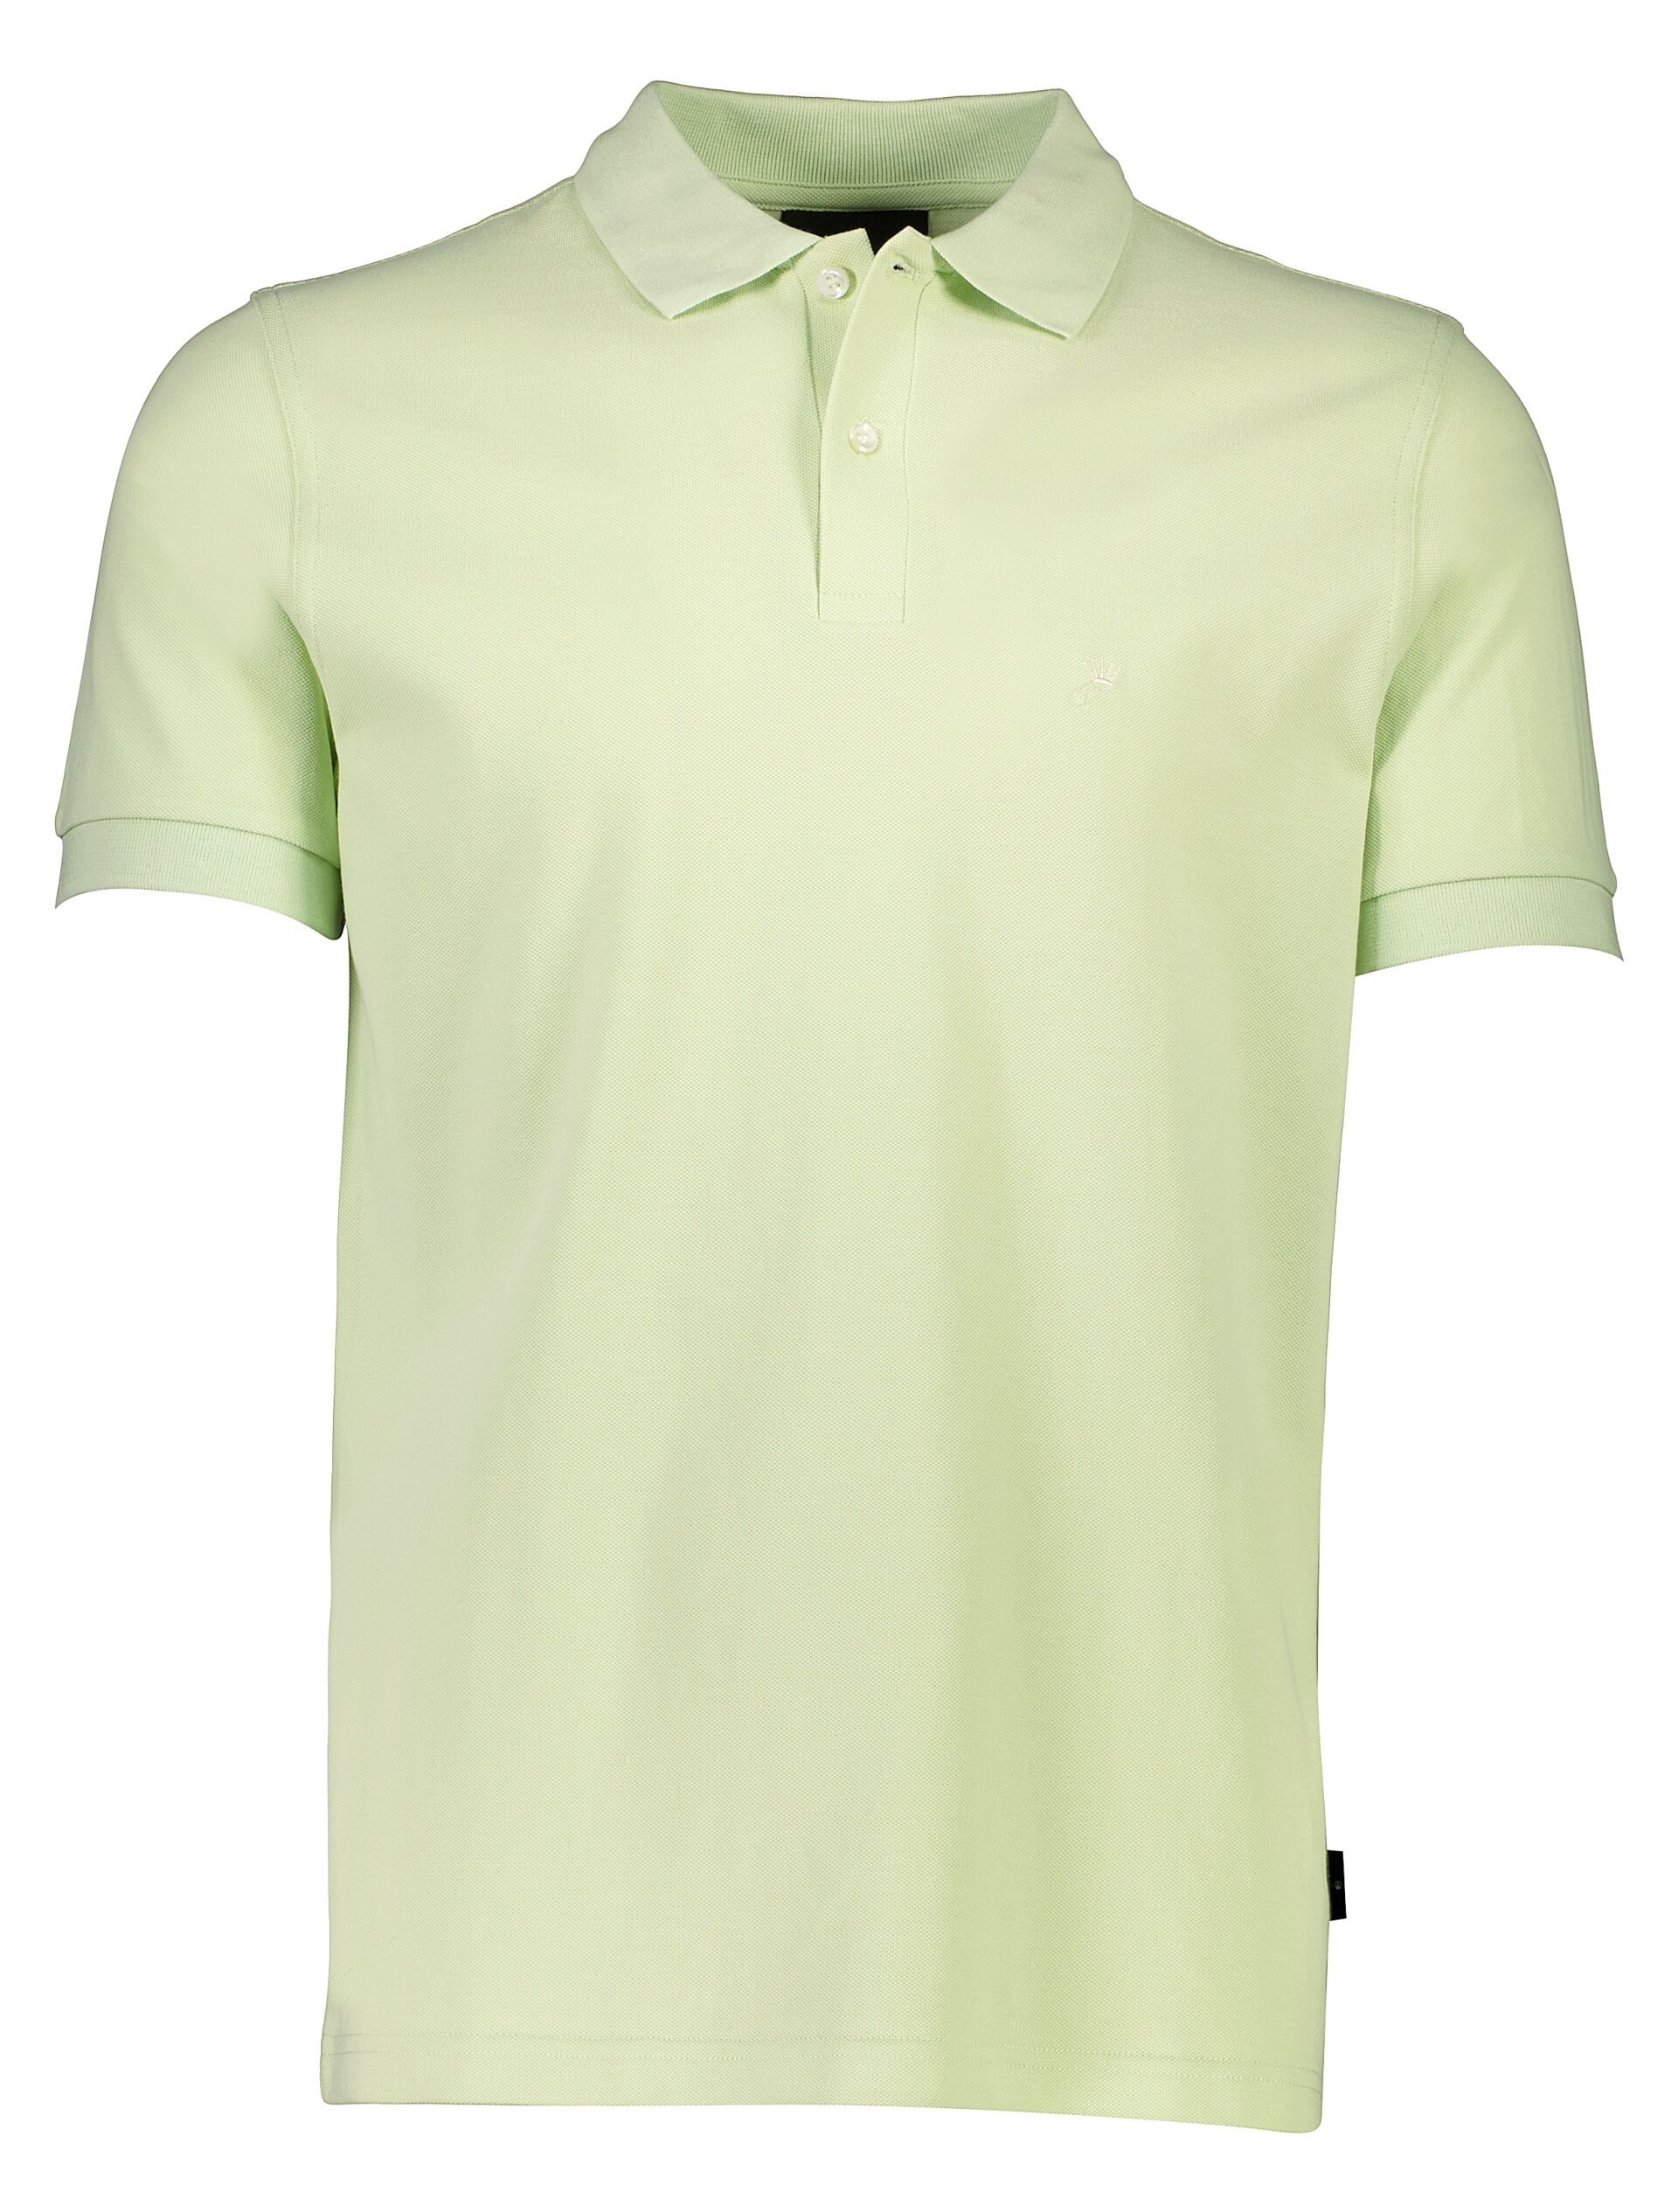 Polo shirt Polo shirt Green 60-452045